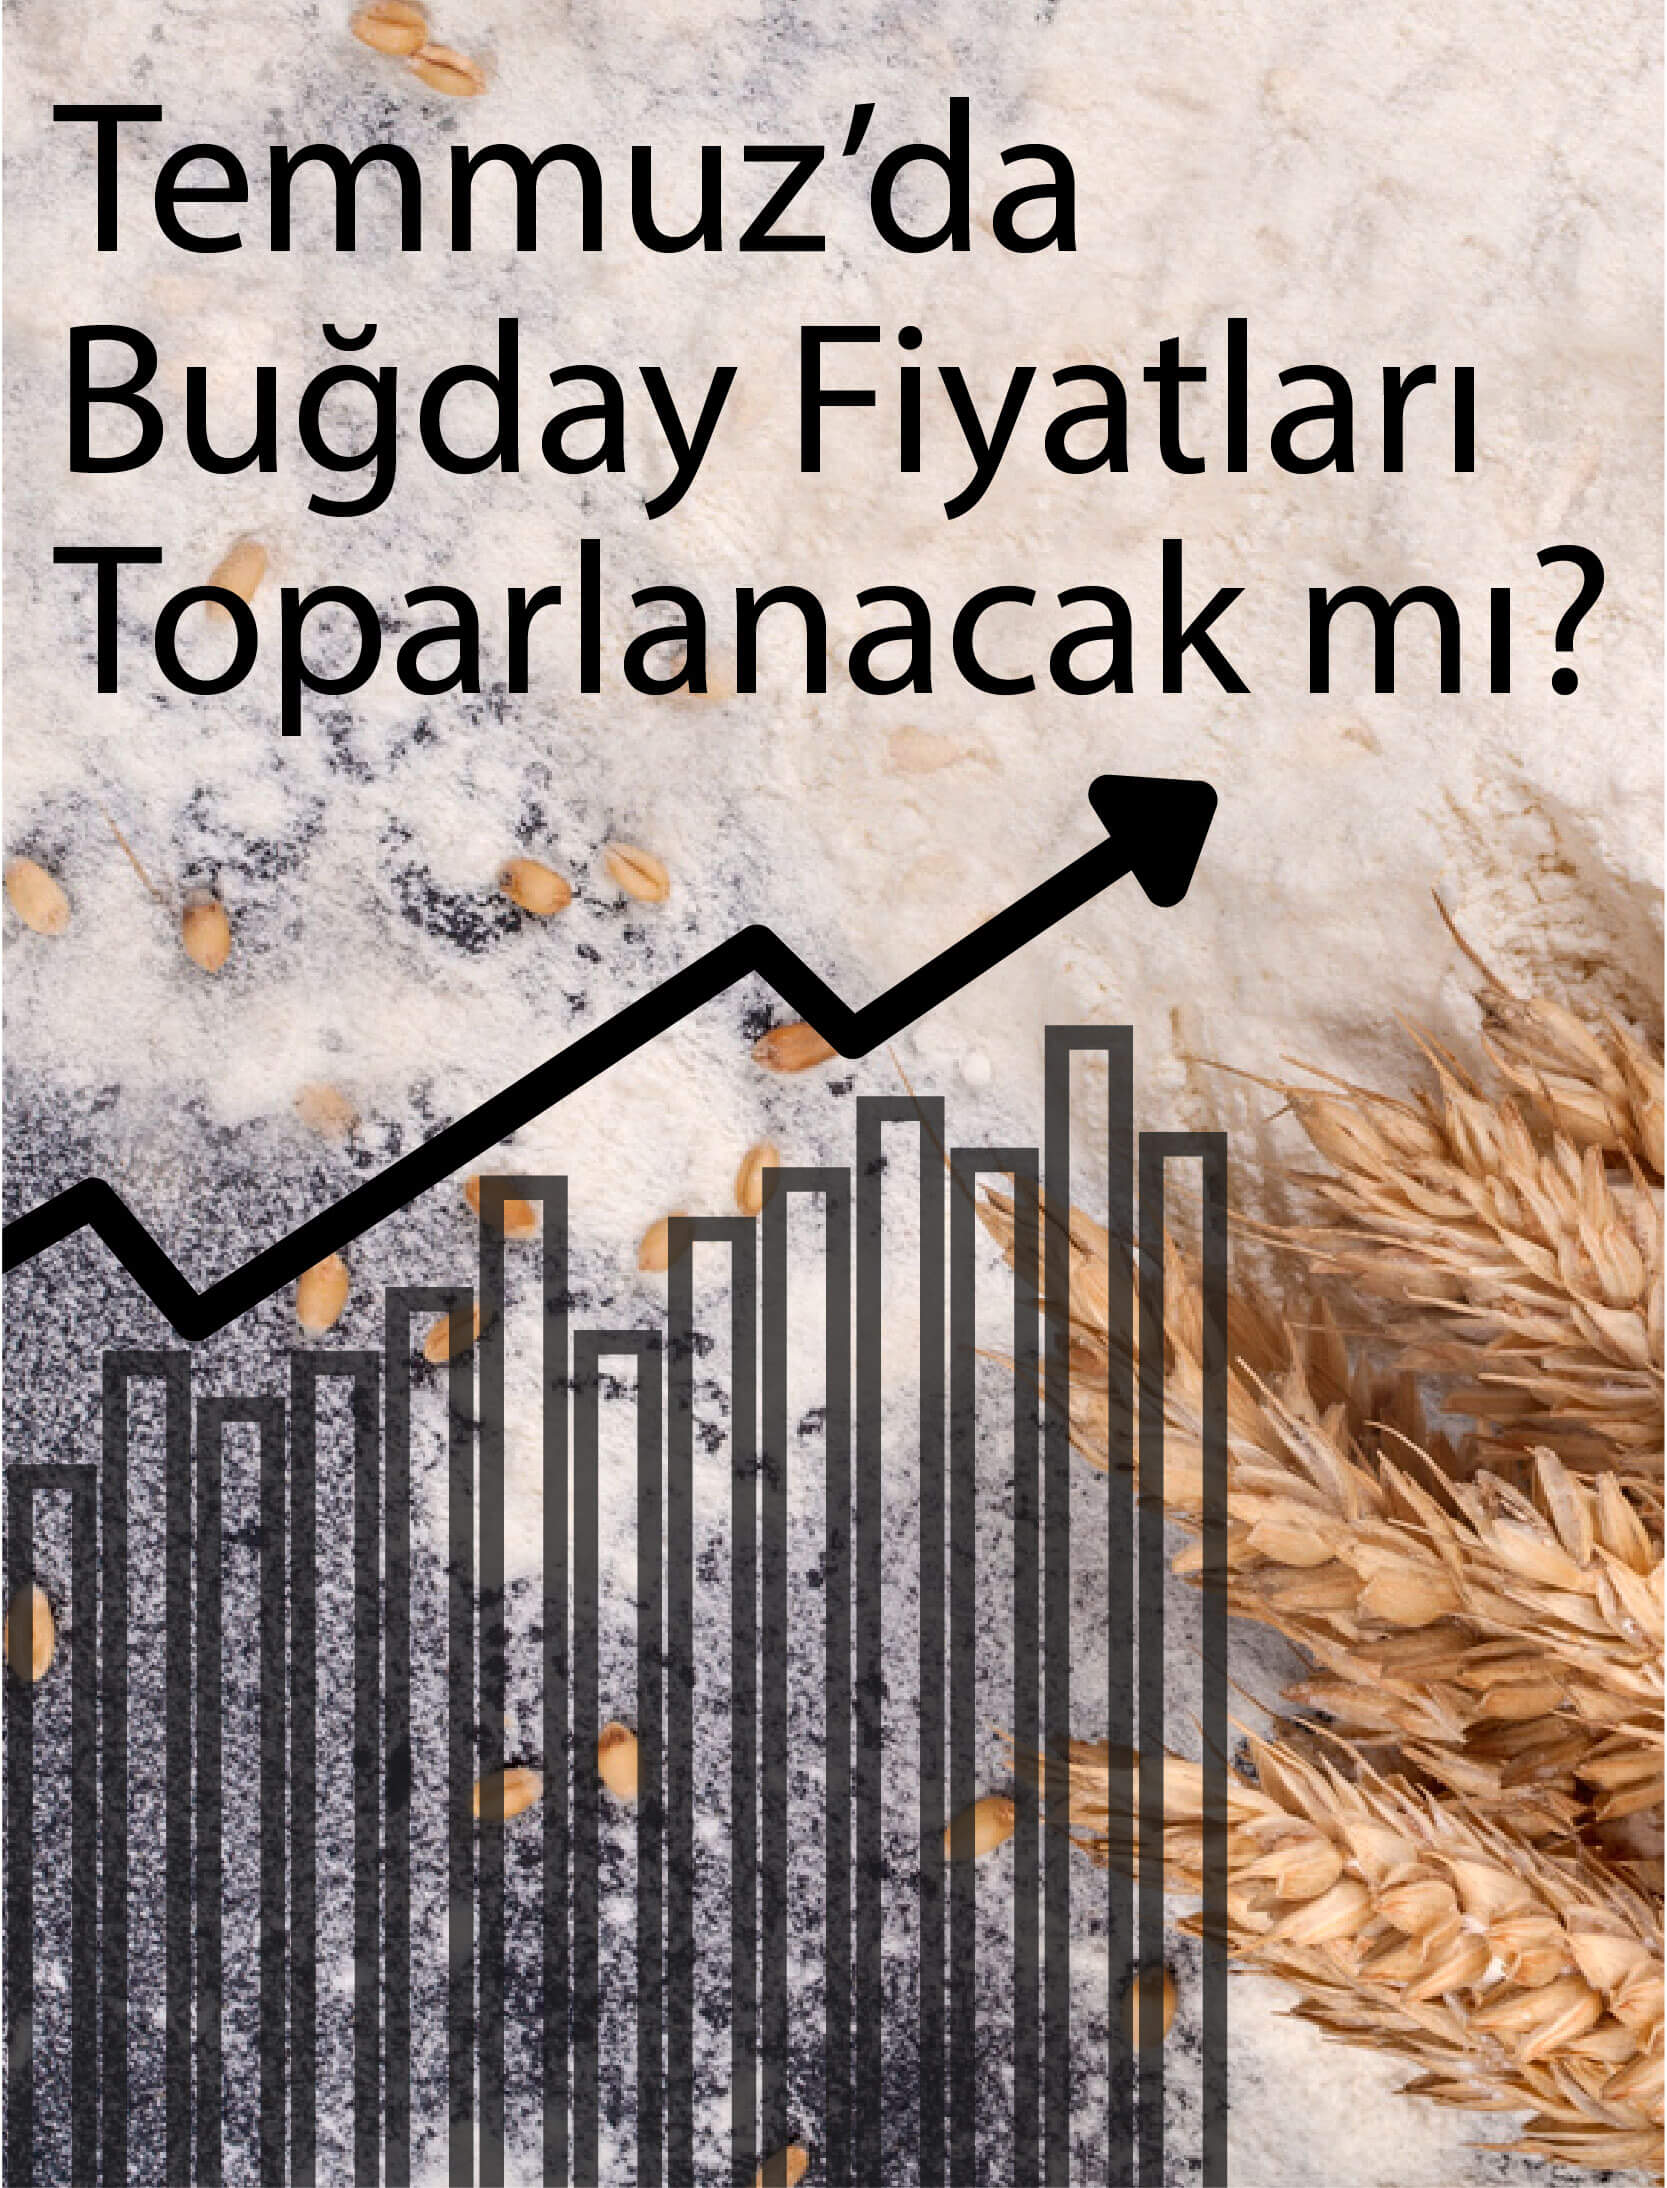 Temmuz'da Buğday Fiyatları Toparlanacak mı?